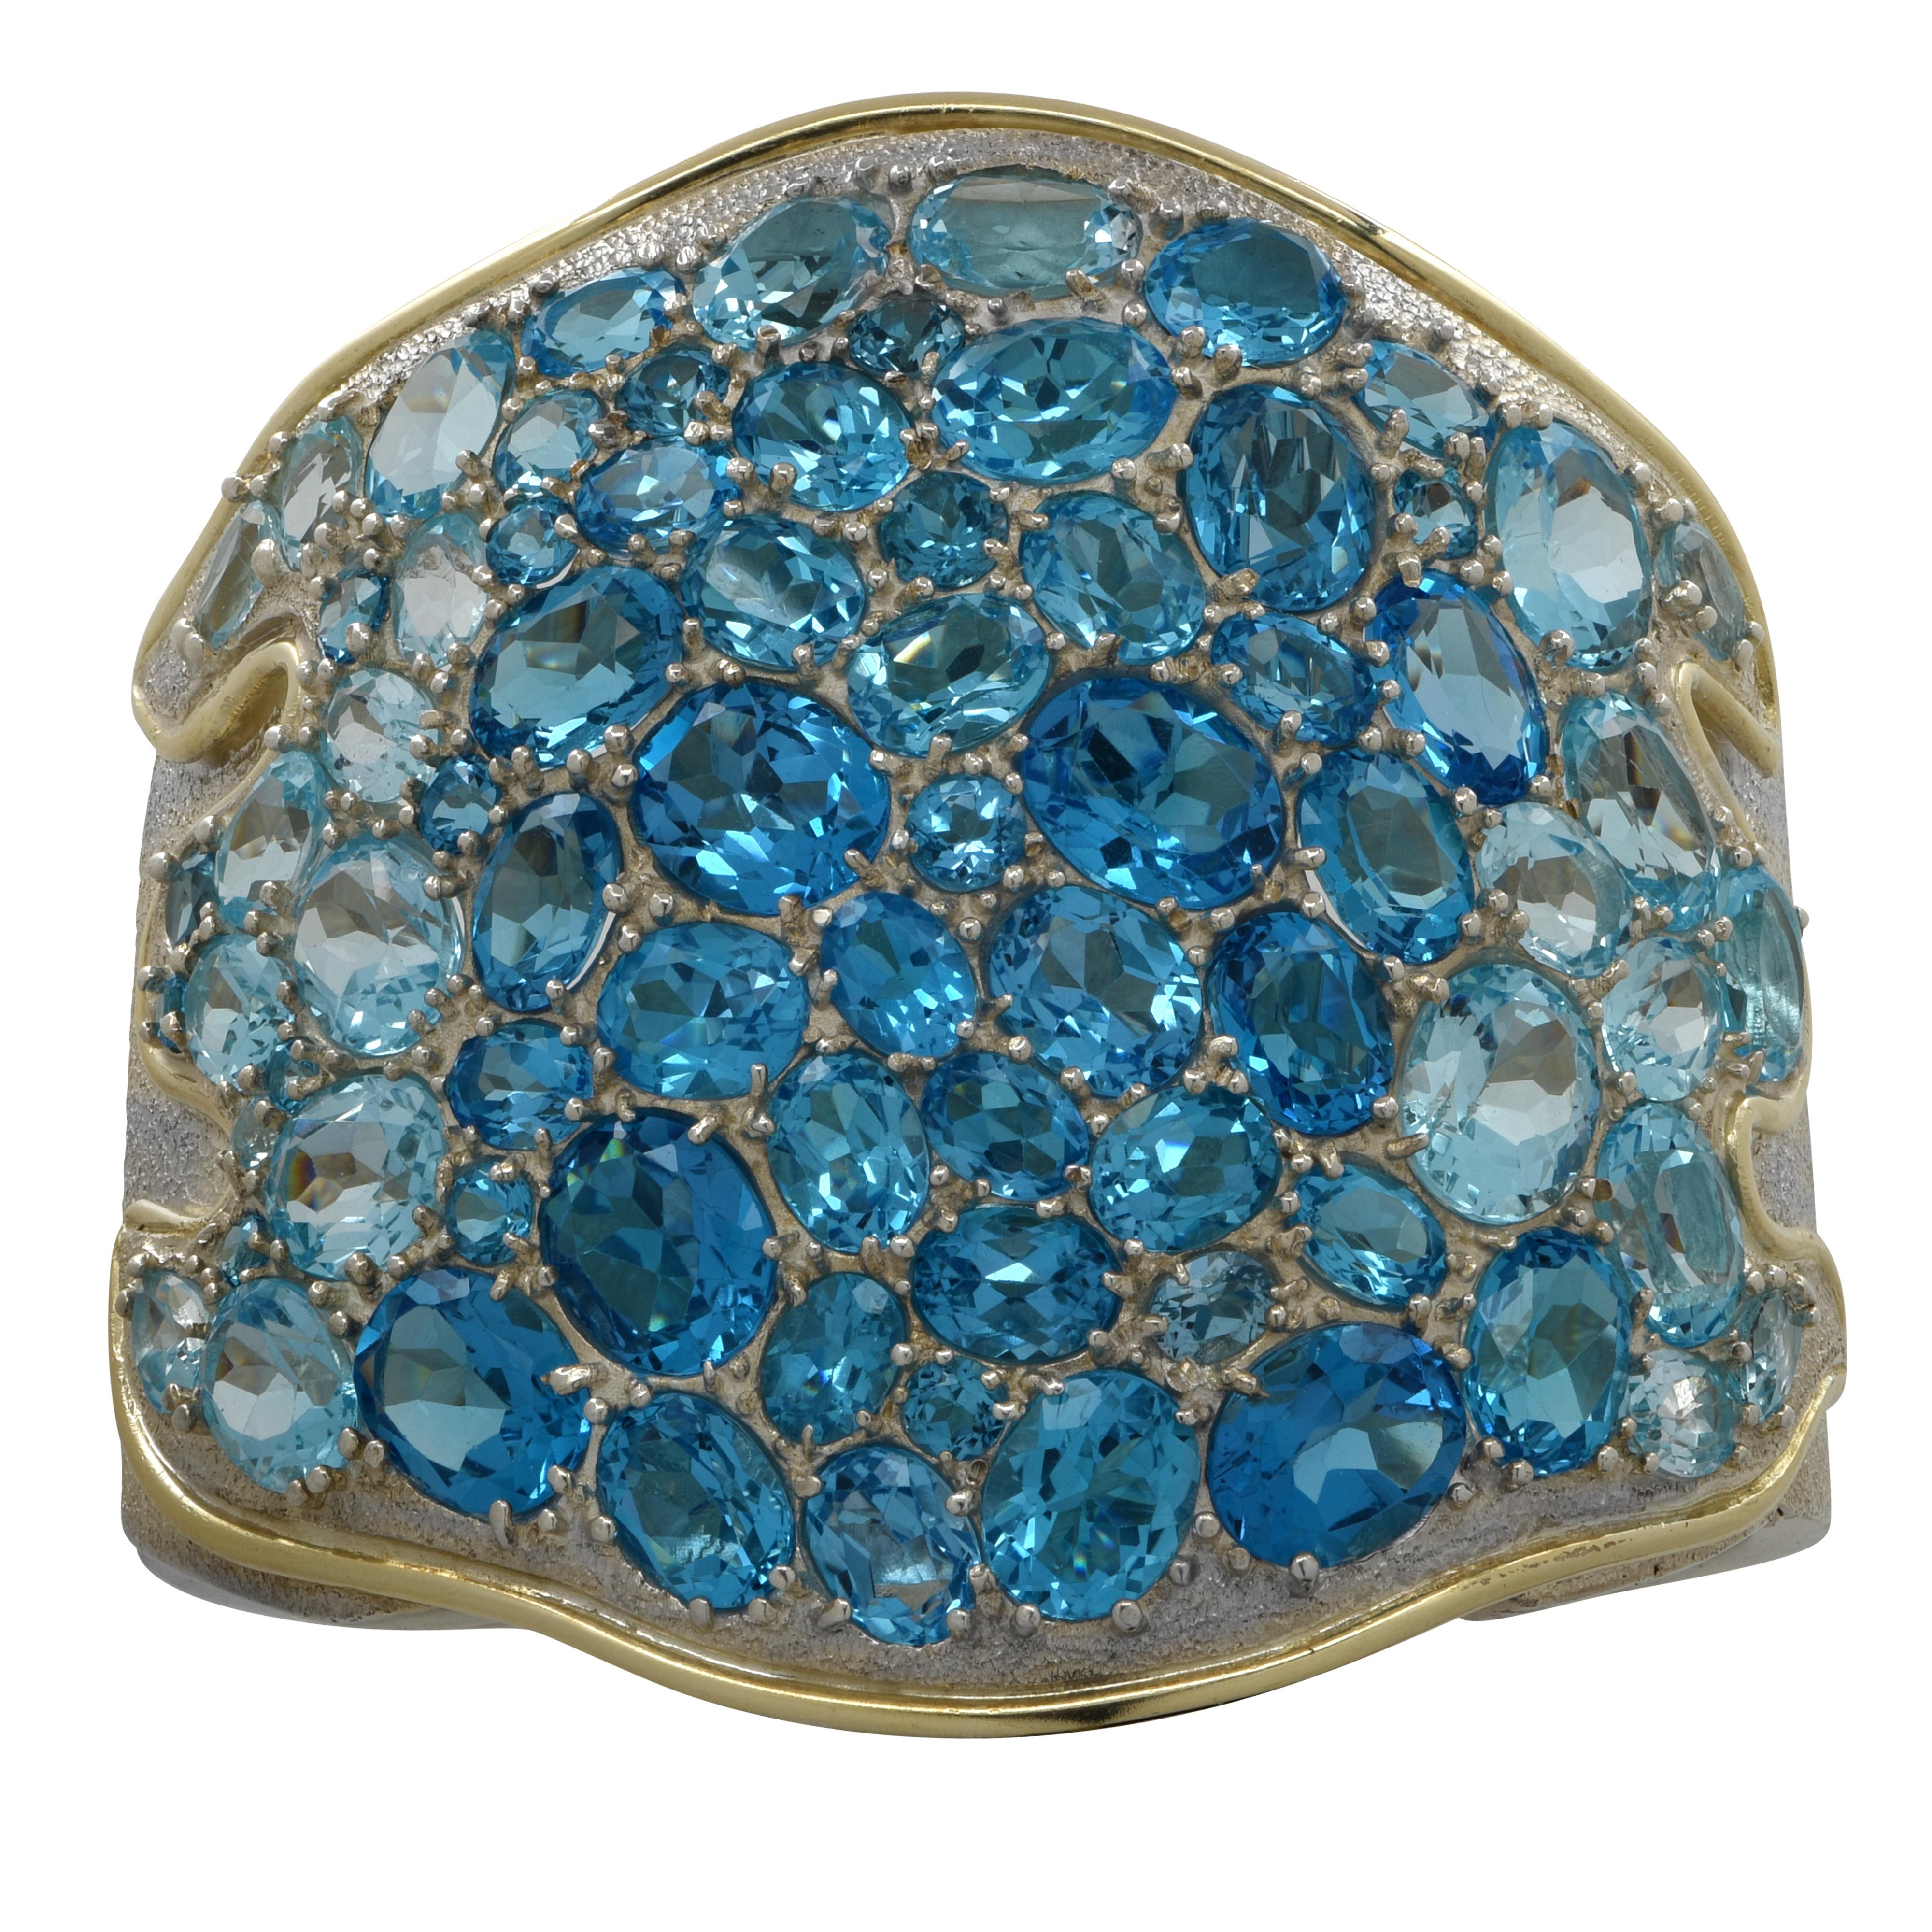 Auffällige Armspange aus Silber mit 73 ovalen Blautopas-Steinen. Dieses wunderschöne Armband misst 2,7 Zoll an seiner breitesten Stelle und verjüngt sich auf 0,8 Zoll. Dieses Armband  Es wiegt 175.3 Gramm. Dieses besondere Stück ist eine